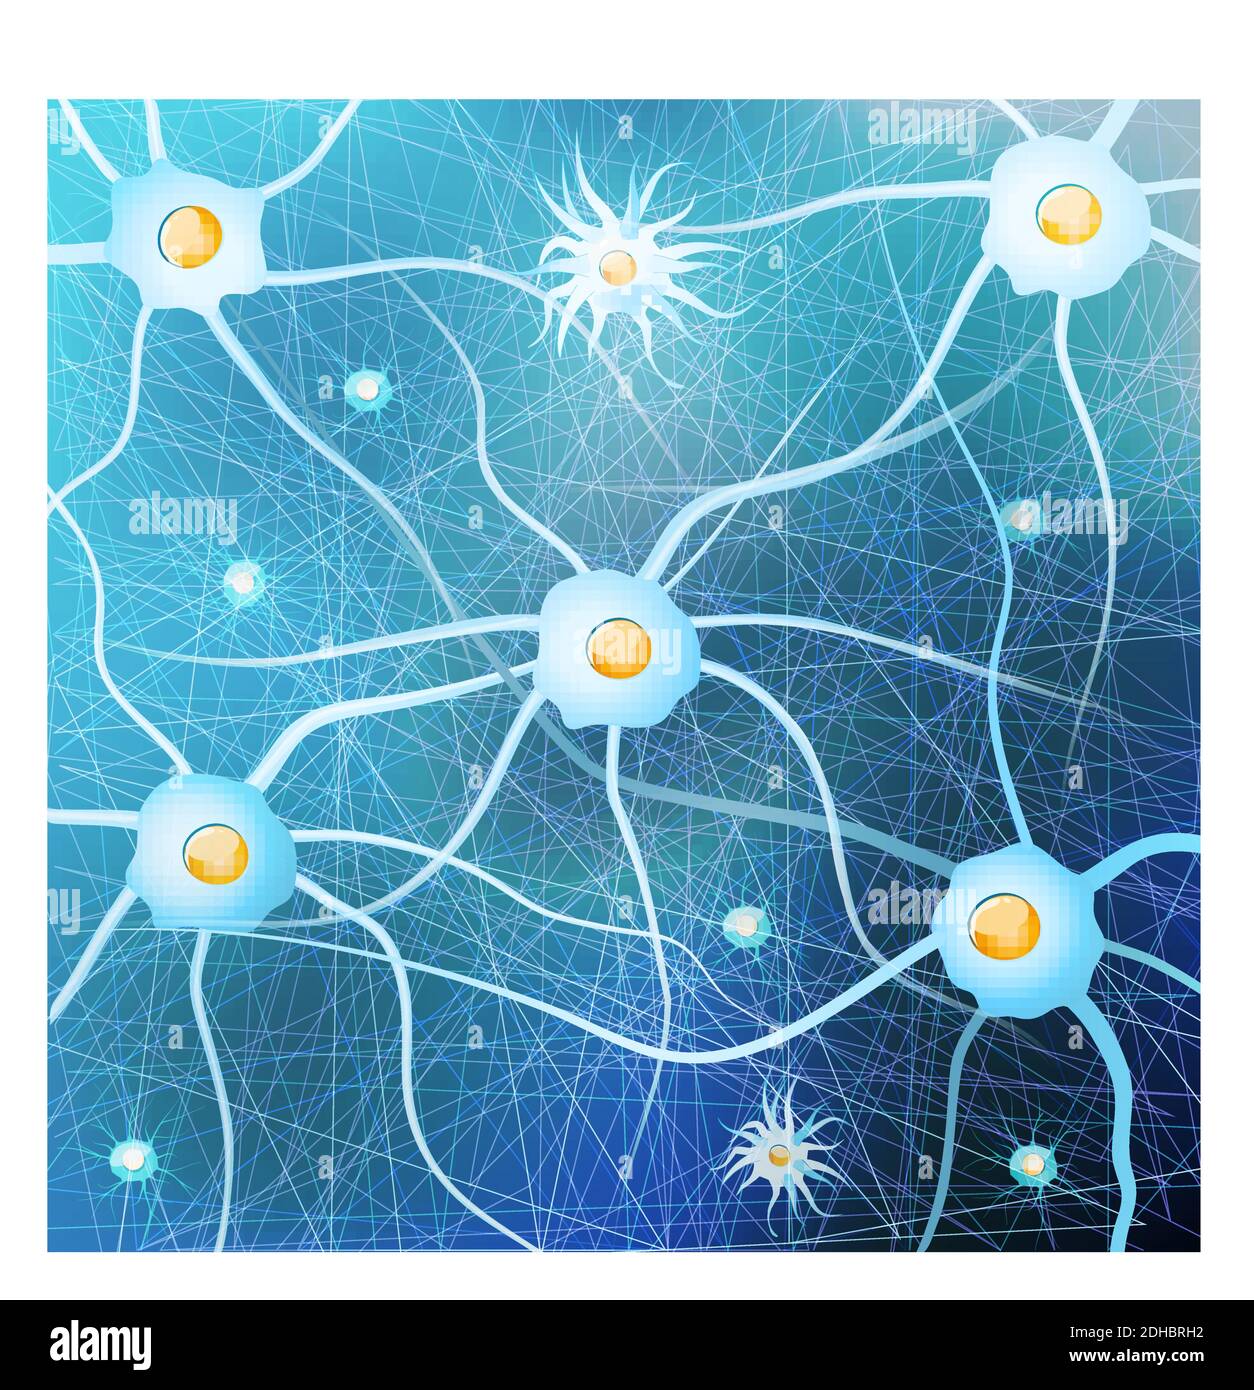 Neuroni e cellule gliali nel cervello su sfondo blu. Modello vettoriale per uso progettuale, biologico, scientifico ed educativo. Illustrazione Vettoriale